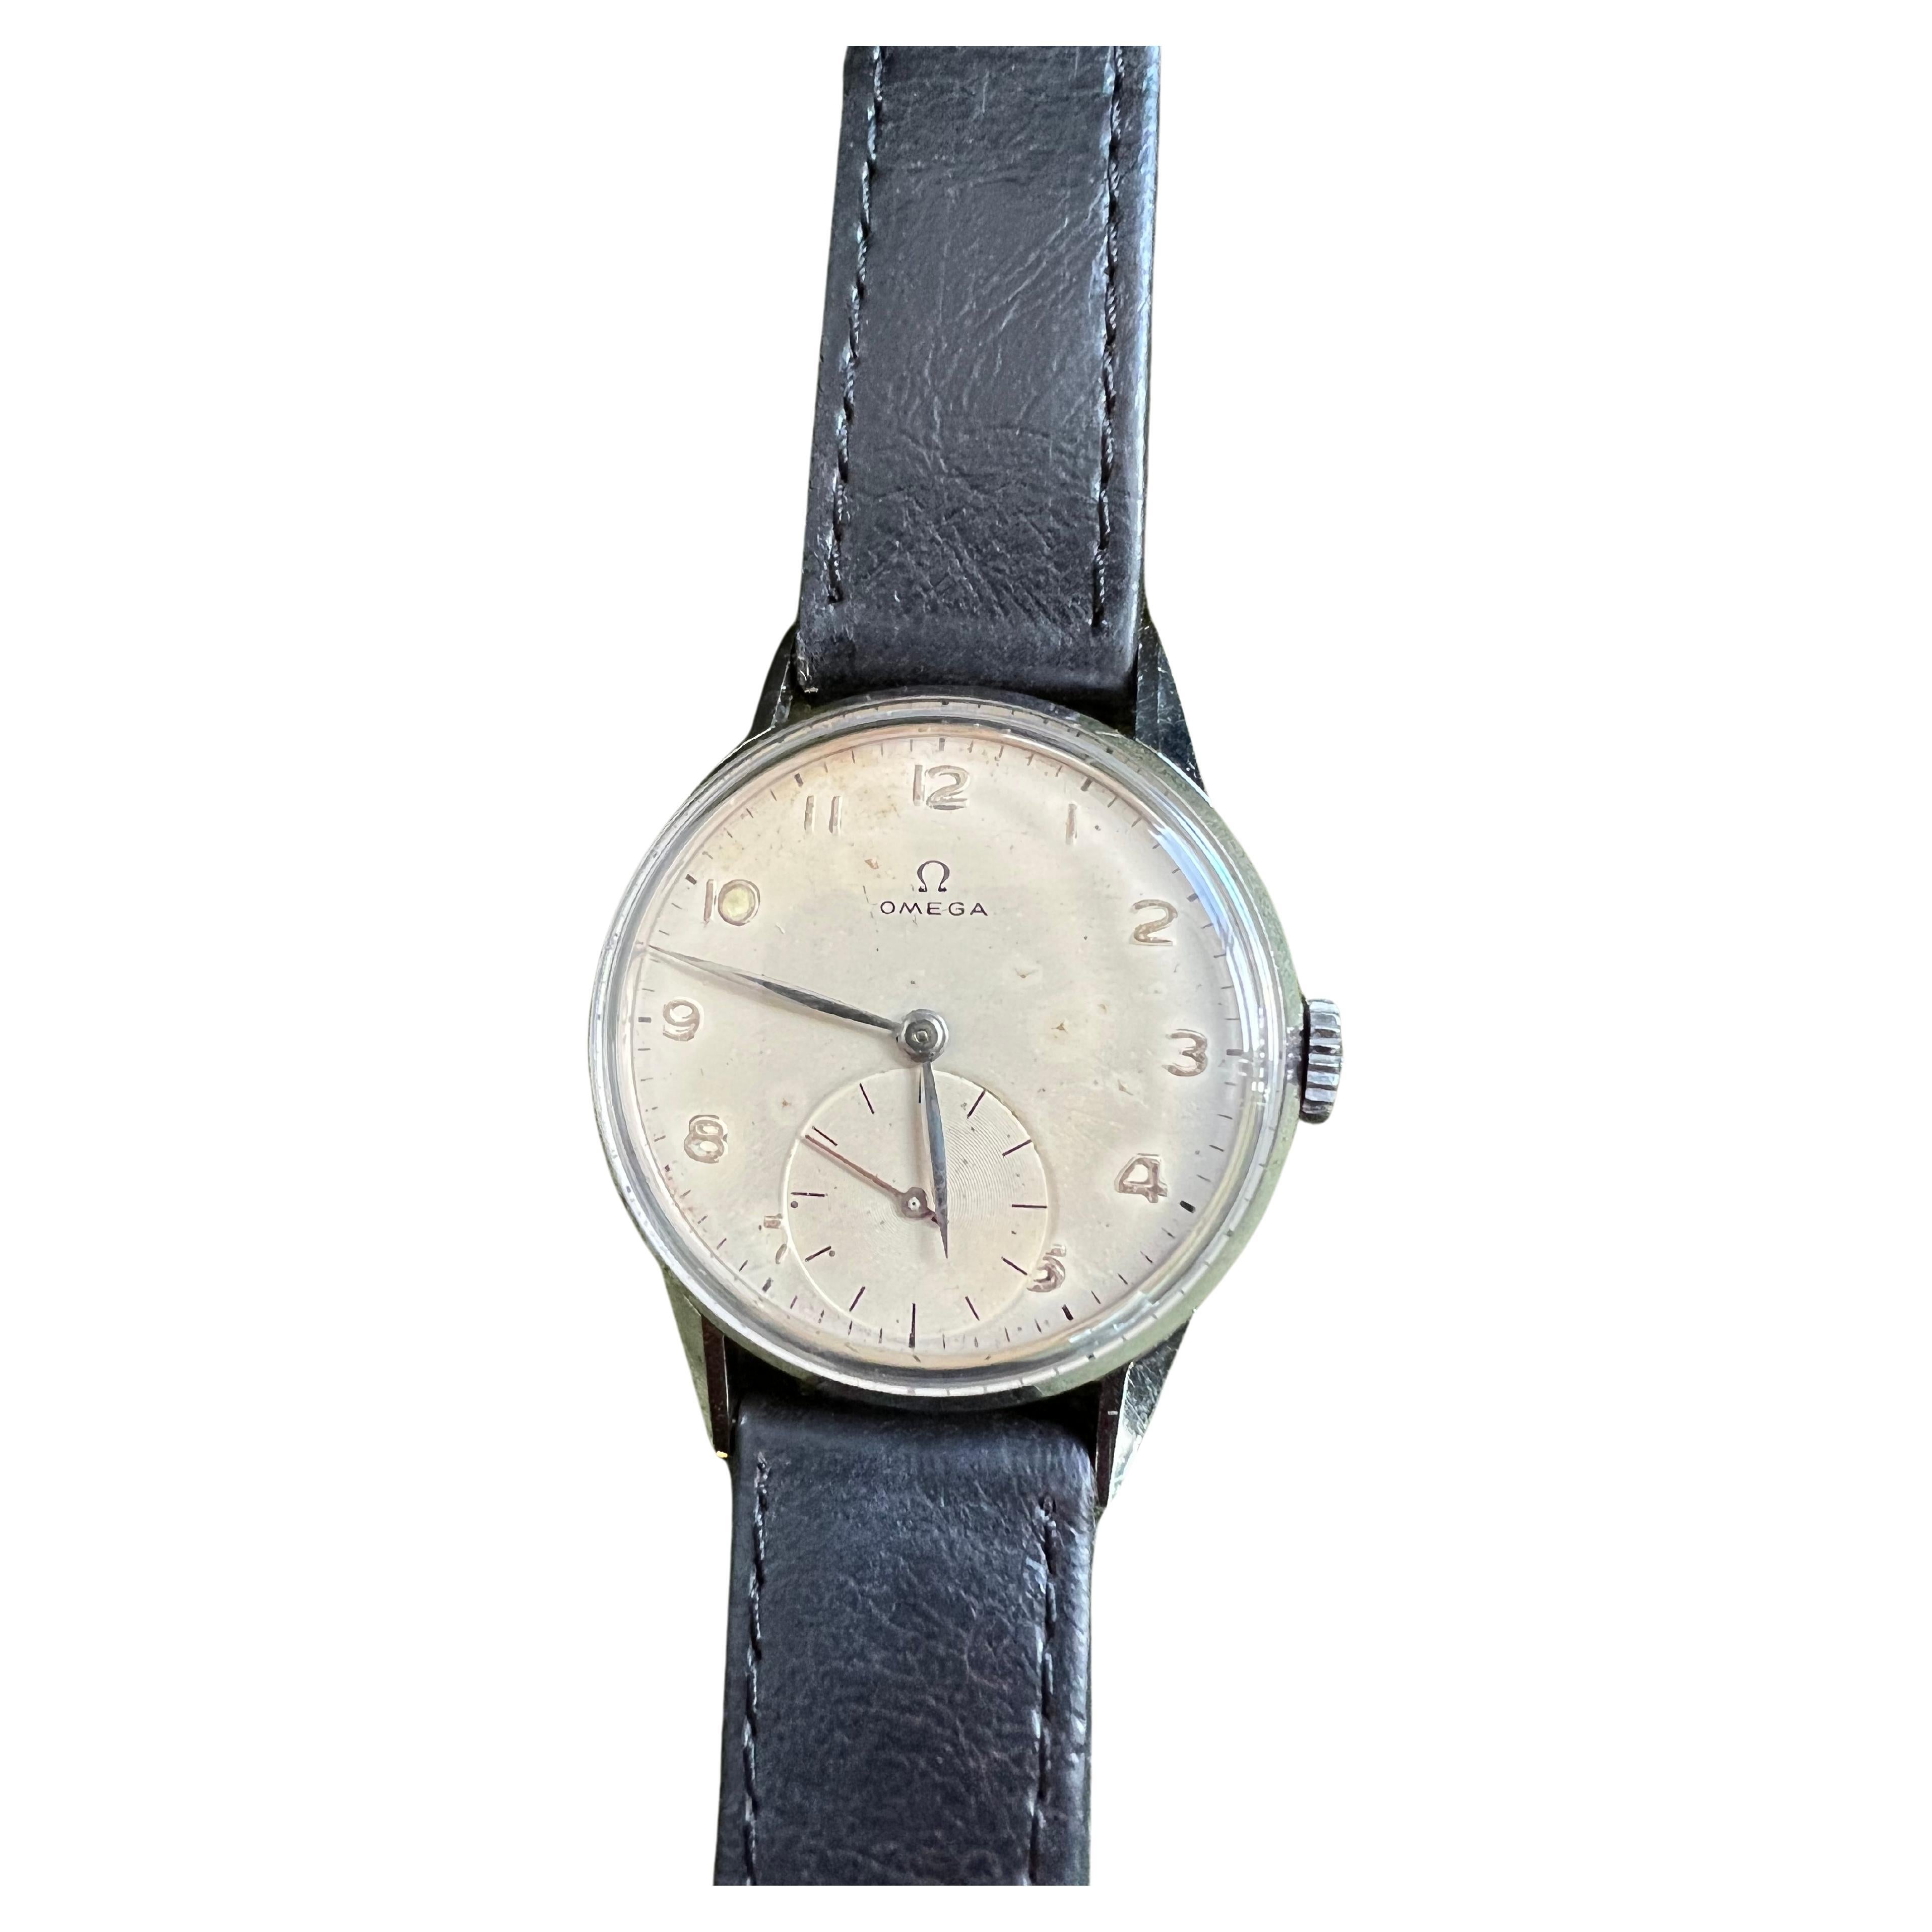 Seltene Vintage 1944 Omega Chronometer Uhr US Navy ausgestellt
Das Erstaunliche an dieser Uhr ist, dass sie in perfektem Zustand ist und auch für ihr Alter erstaunlich aussieht. Sie ist ein Stück Geschichte und gleichzeitig eine elegante und